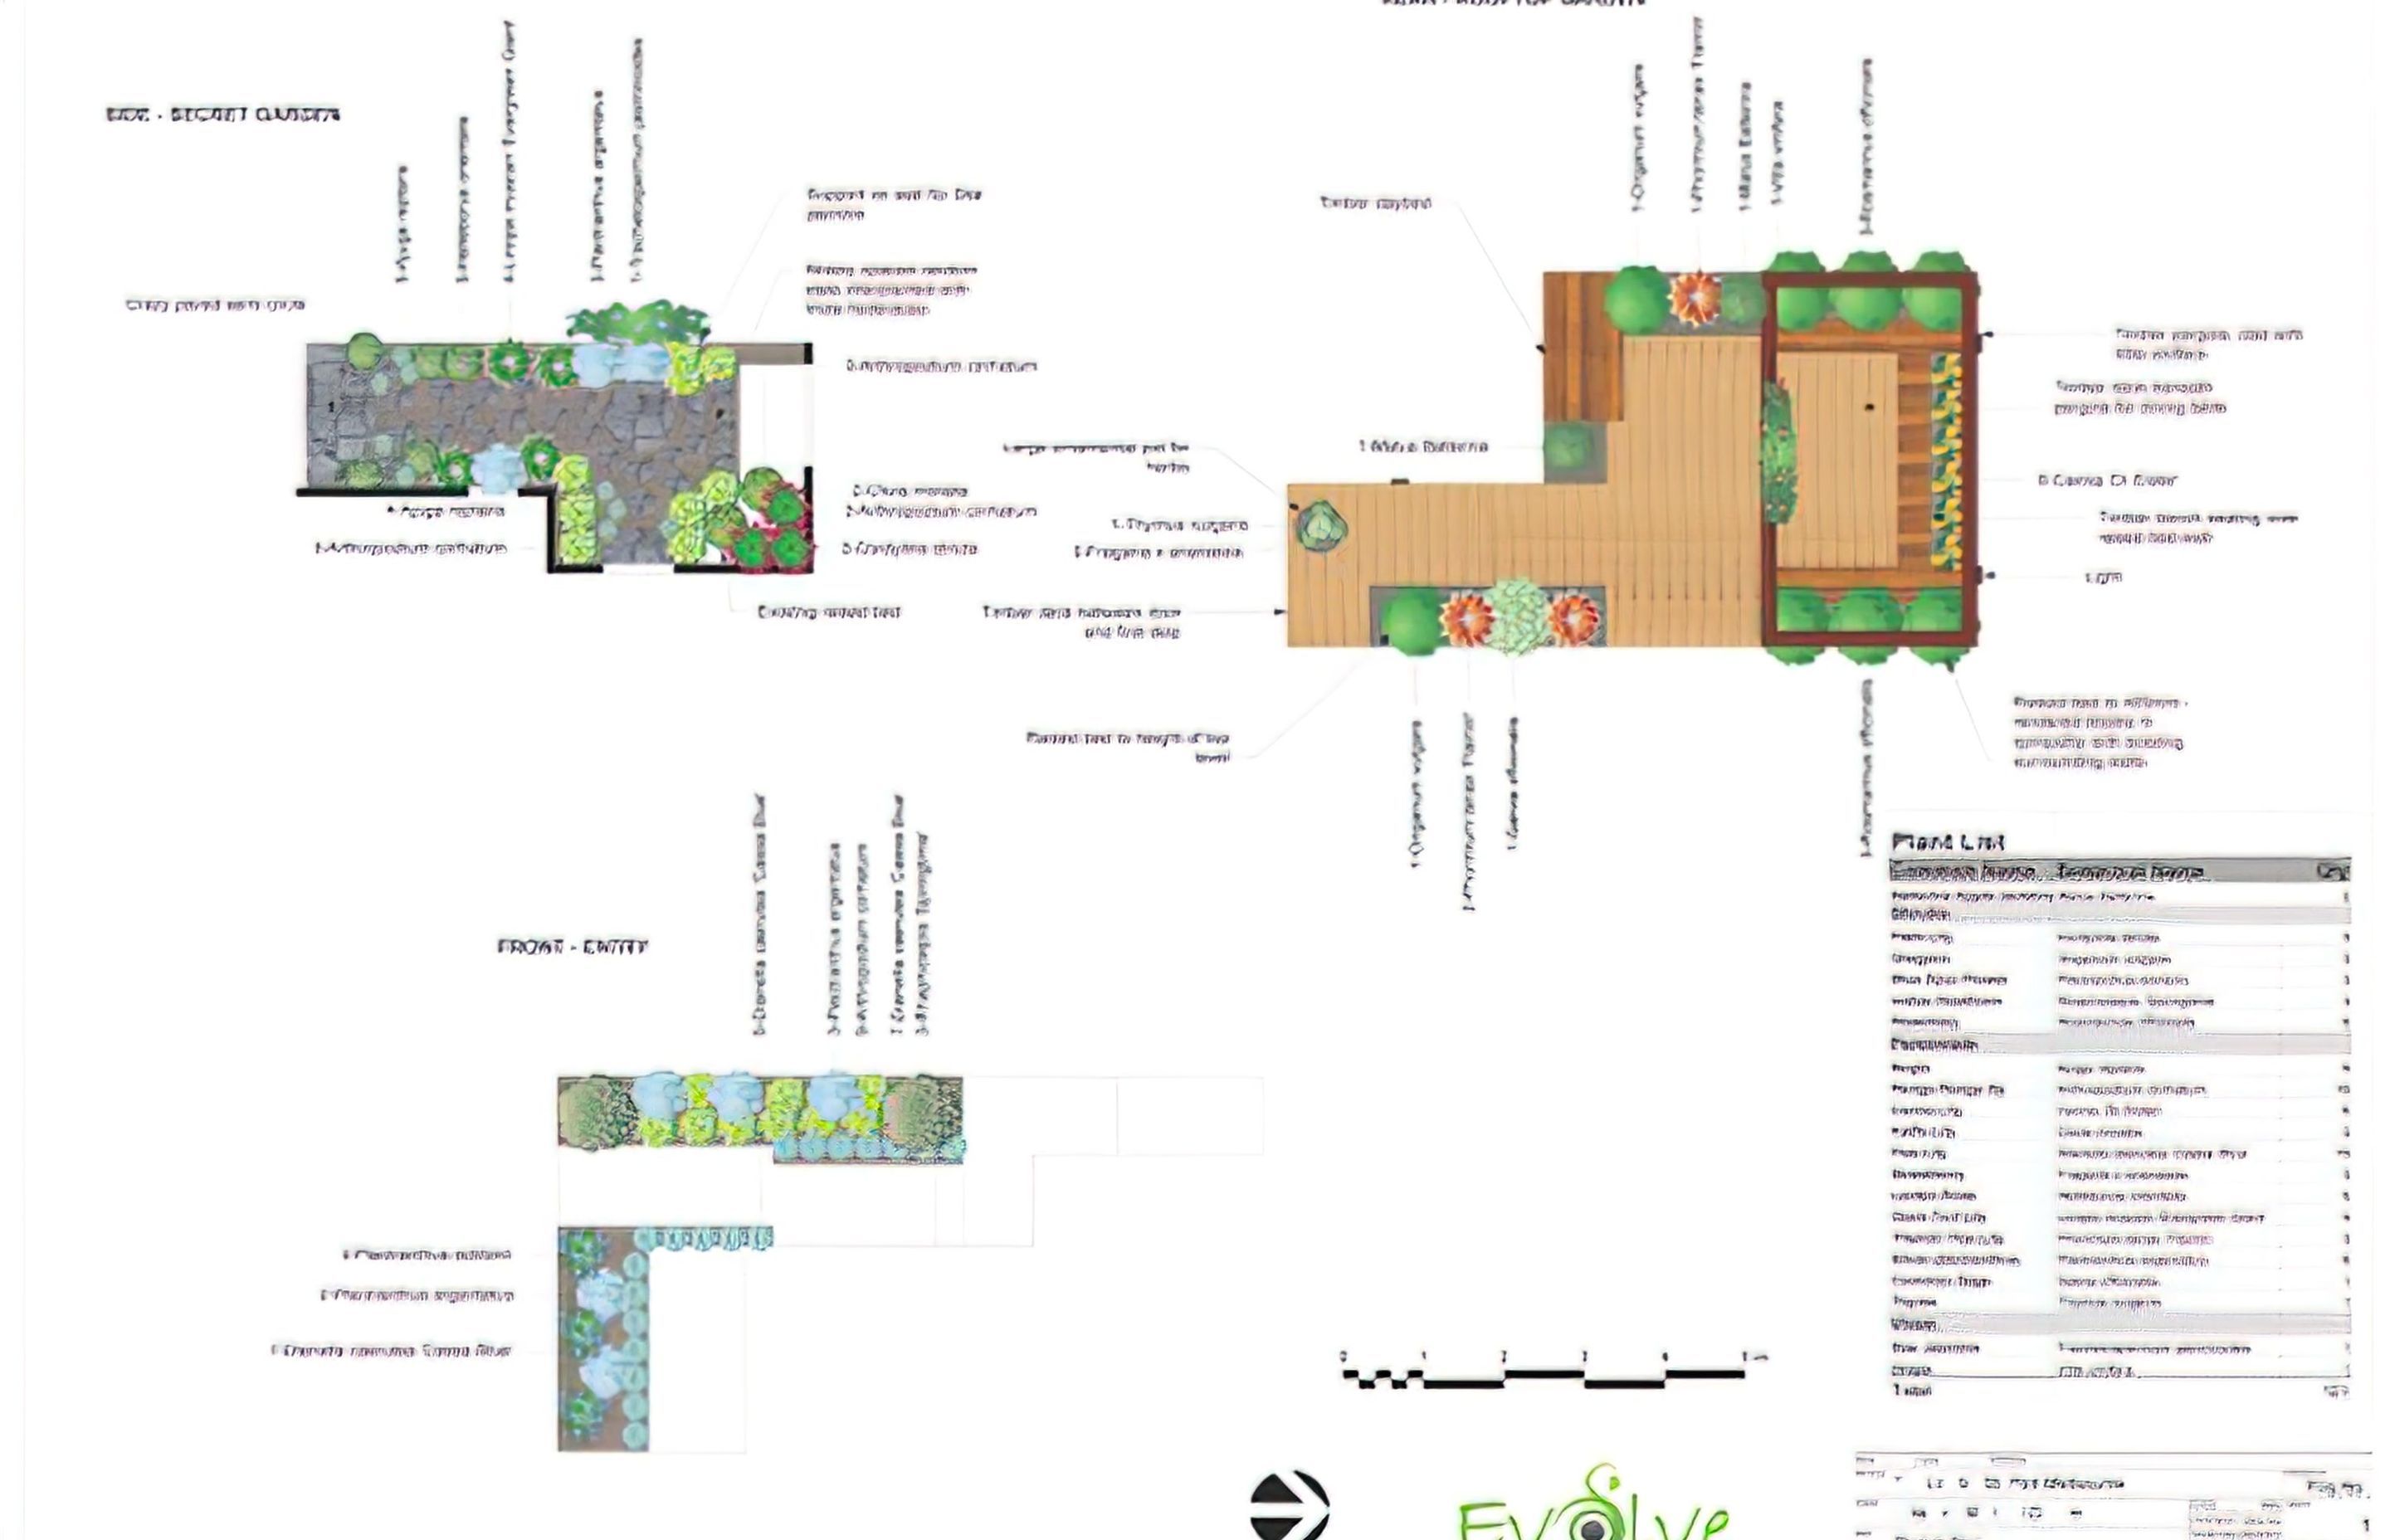 Port Melbourne Landscape Sketch Plan